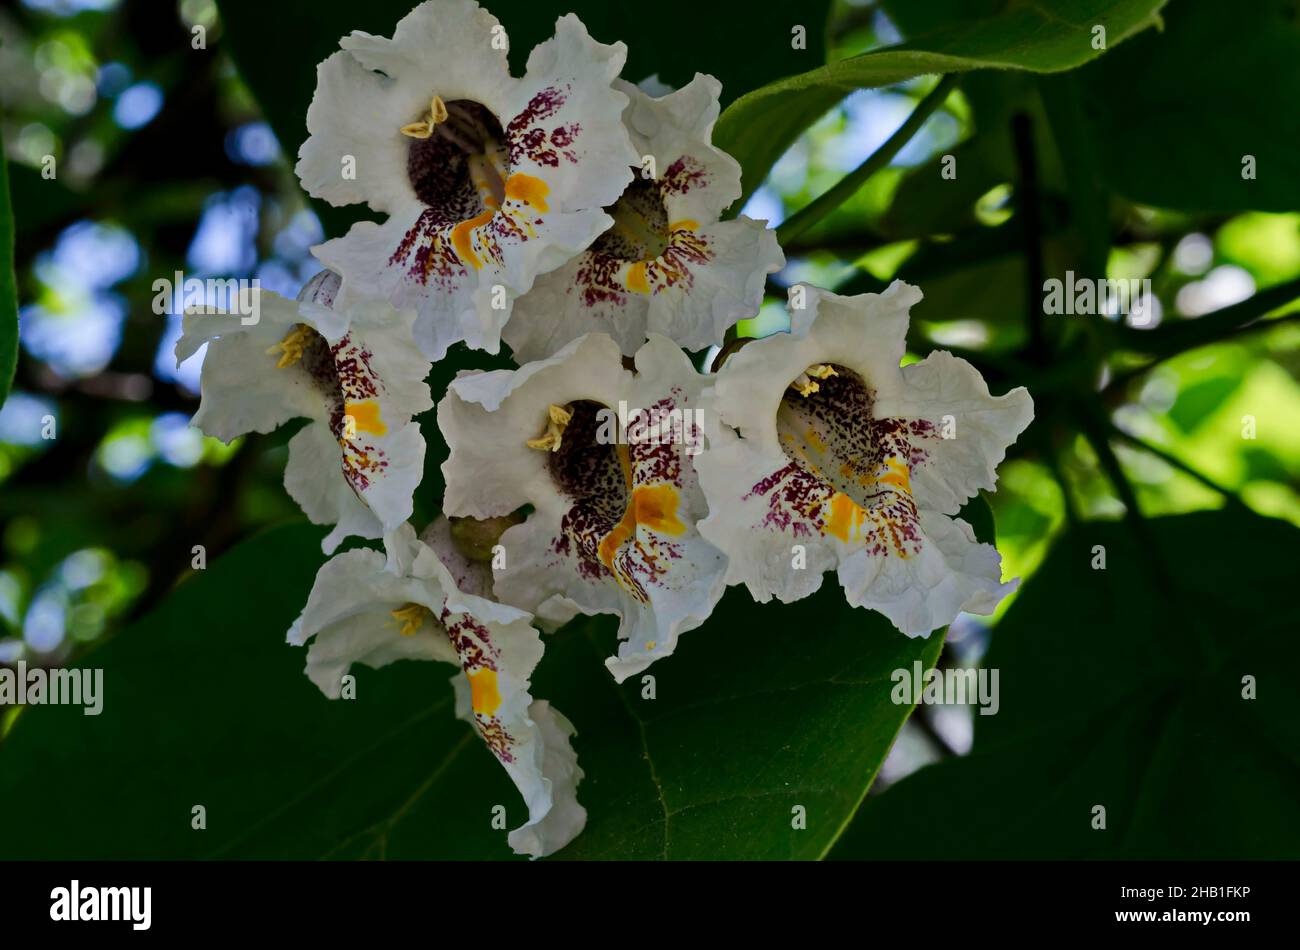 Nahaufnahme eines Astes von blühenden indischen Bohnenbäumen oder Catalpa bignonioides, Sofia, Bulgarien Stockfoto